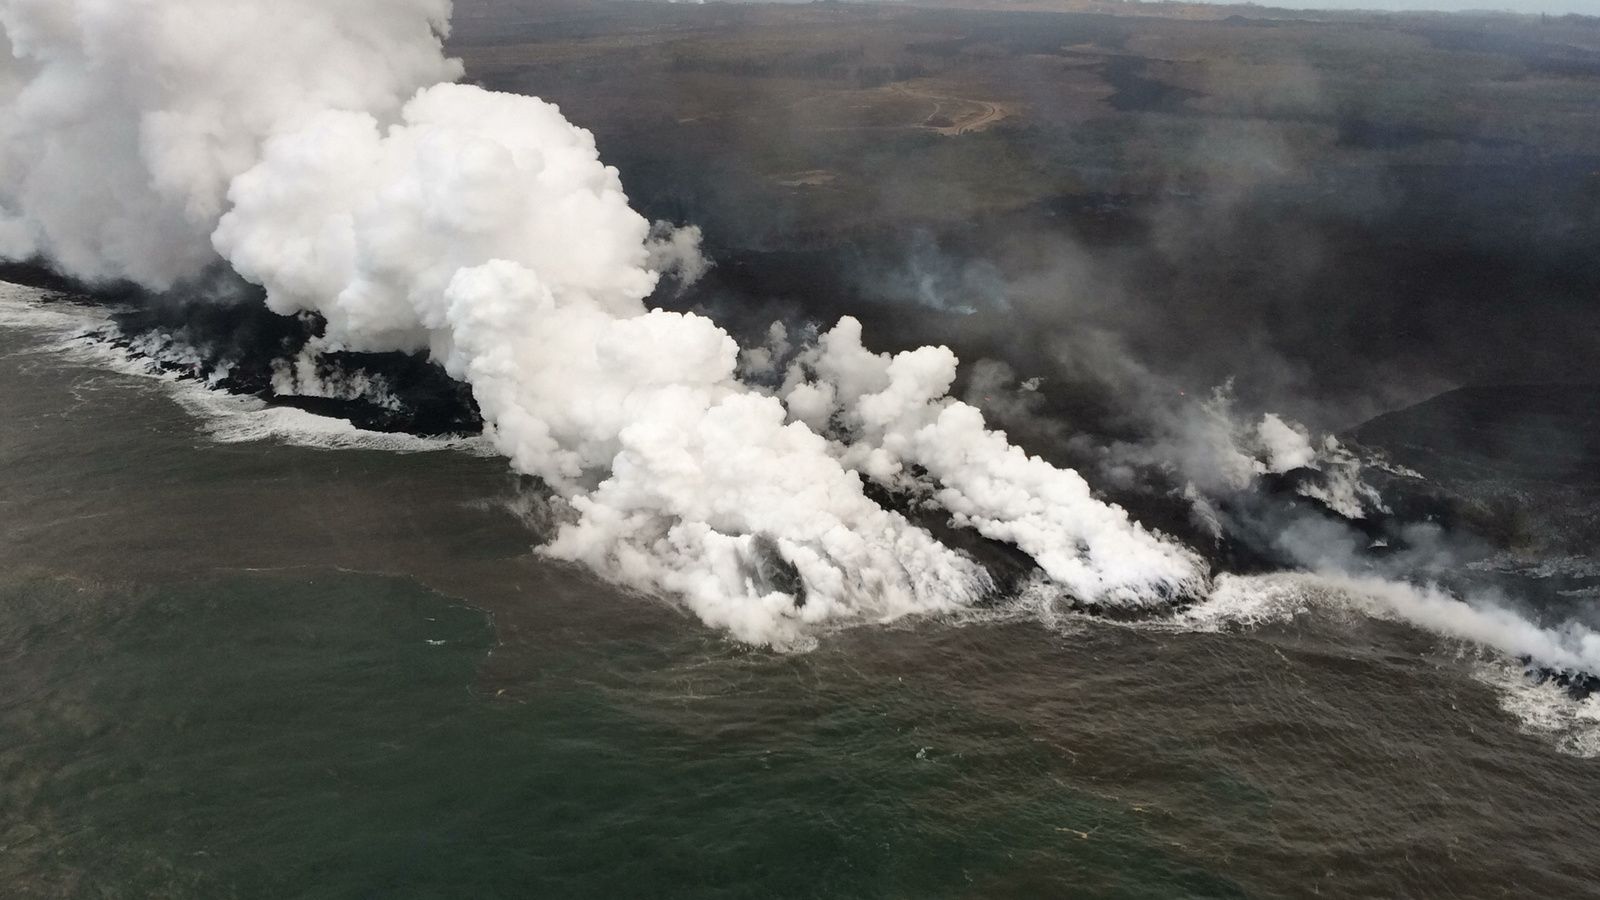 Kilauea zone de rift Est - l'entrée de la lave en mer à  Ahalanui génère un puissnat panache de laze - photo 16.07.2018 USGS